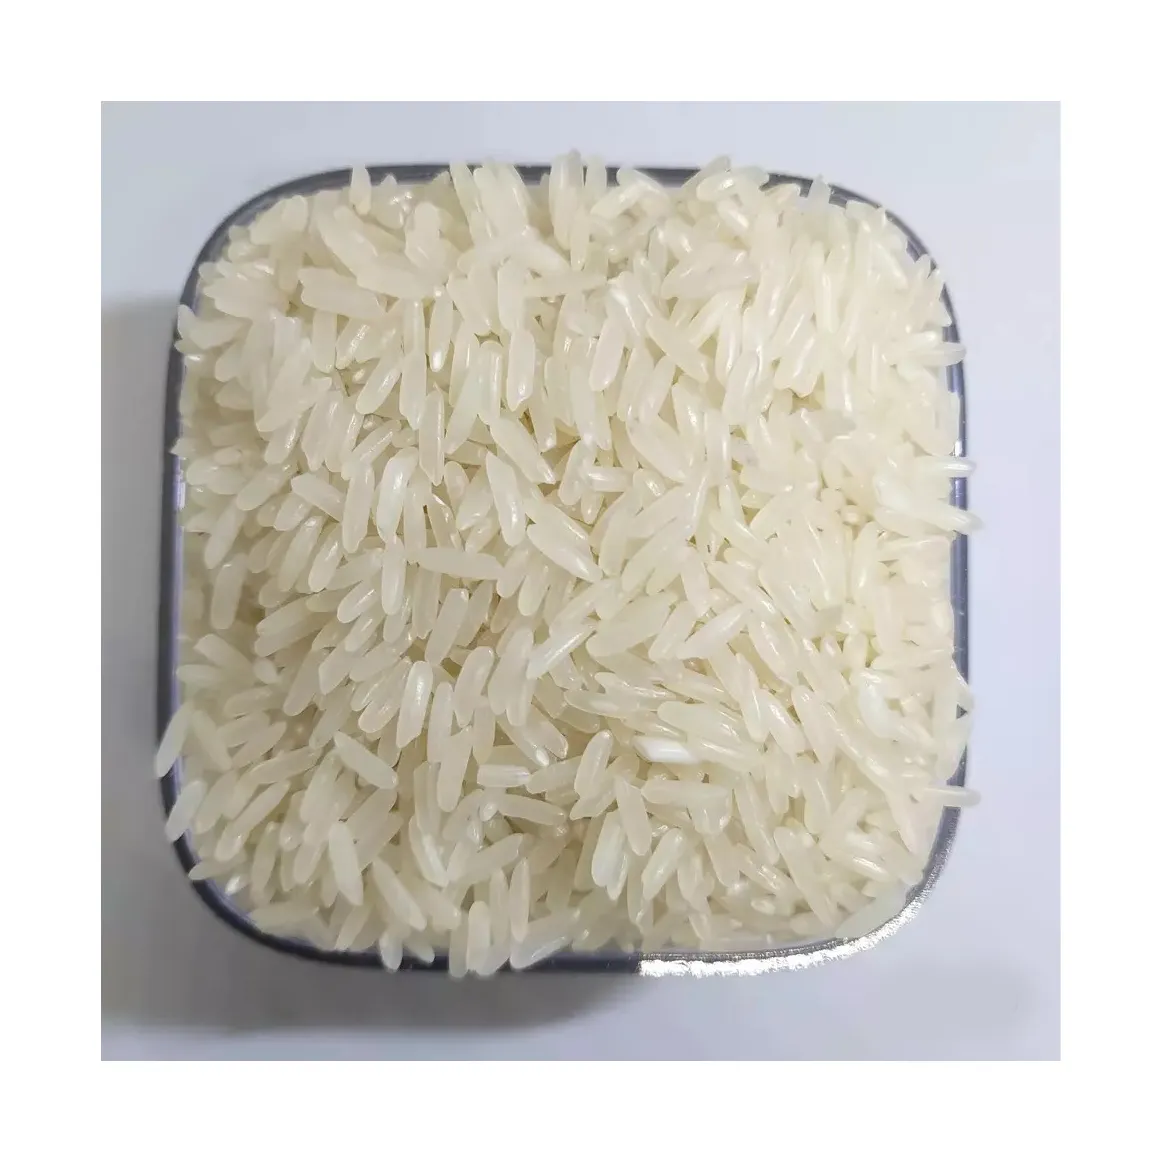 Рис Baldo Премиум высшее качество 2022 Лидер продаж бобовые турецкие 25 кг сертифицированная упаковка натуральный оптовый рис